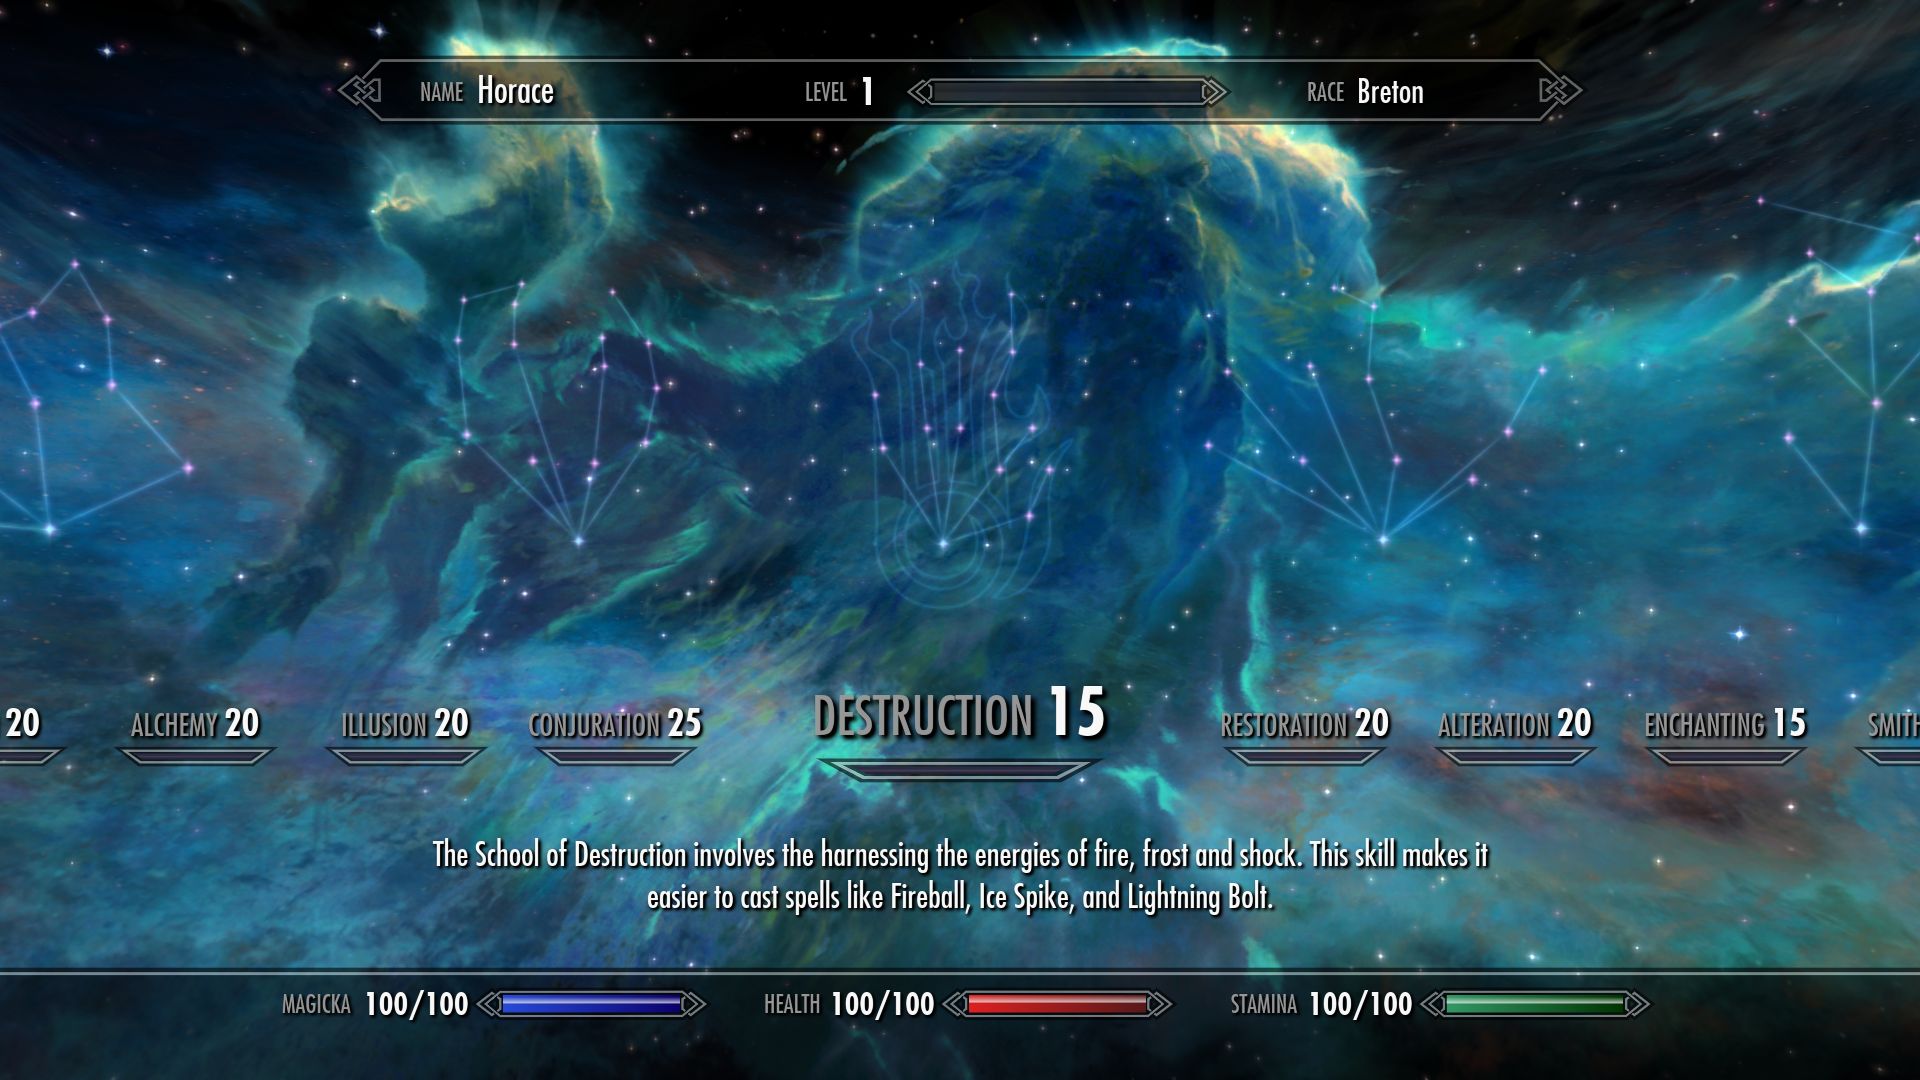 Der Skill-Bildschirm in The Elder Scrolls V: Skyrim, wo verschiedene Fähigkeiten als Konstellationen dargestellt werden